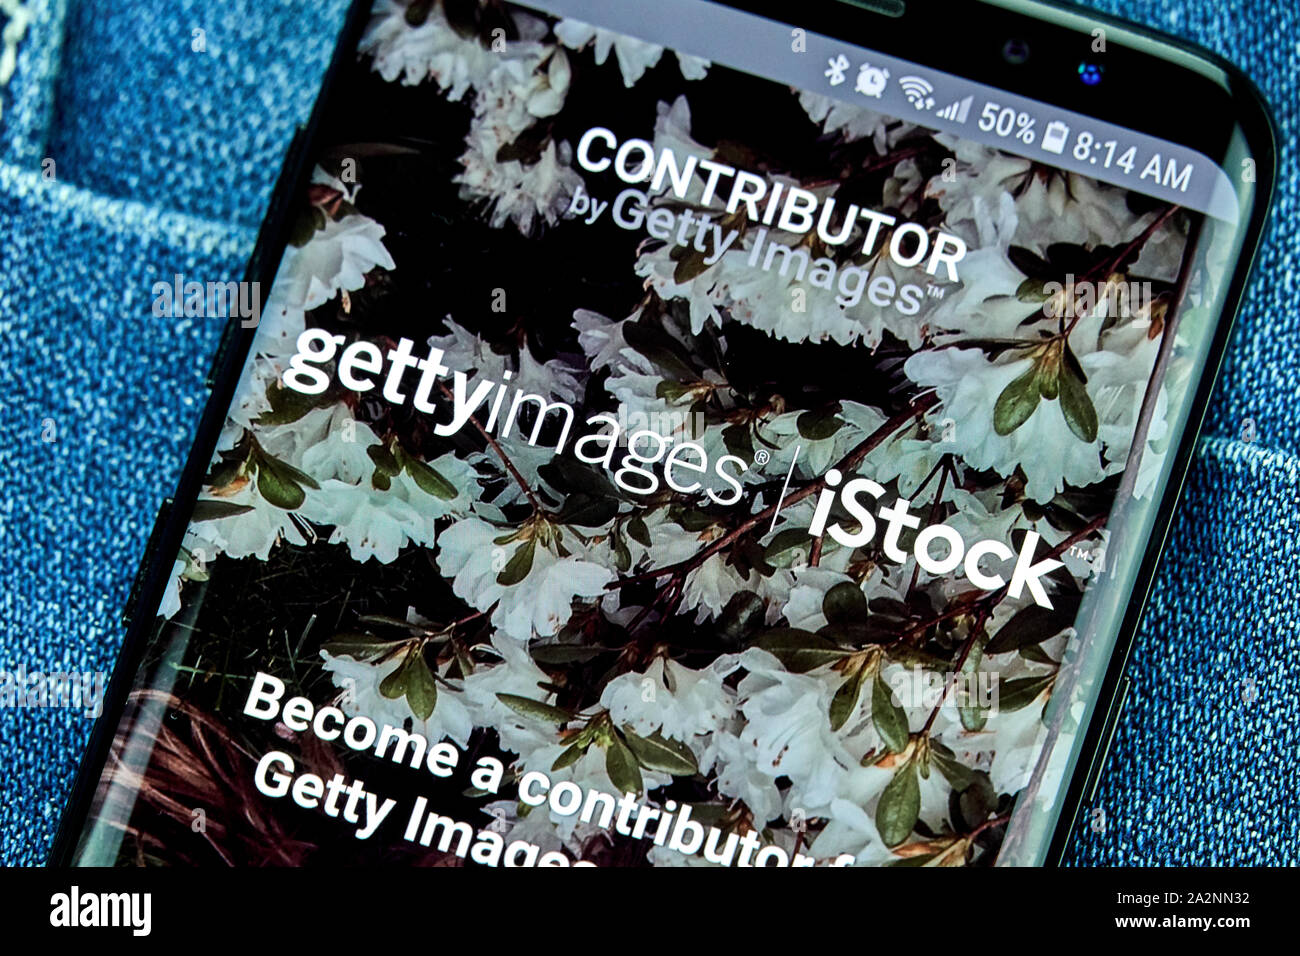 MONTREAL, Canada - 23 dicembre 2018: Collaboratore Getty app Android sul Samsung s8 schermo. Getty Images, Inc. è un fornitore di immagini stock, editoriale Foto Stock